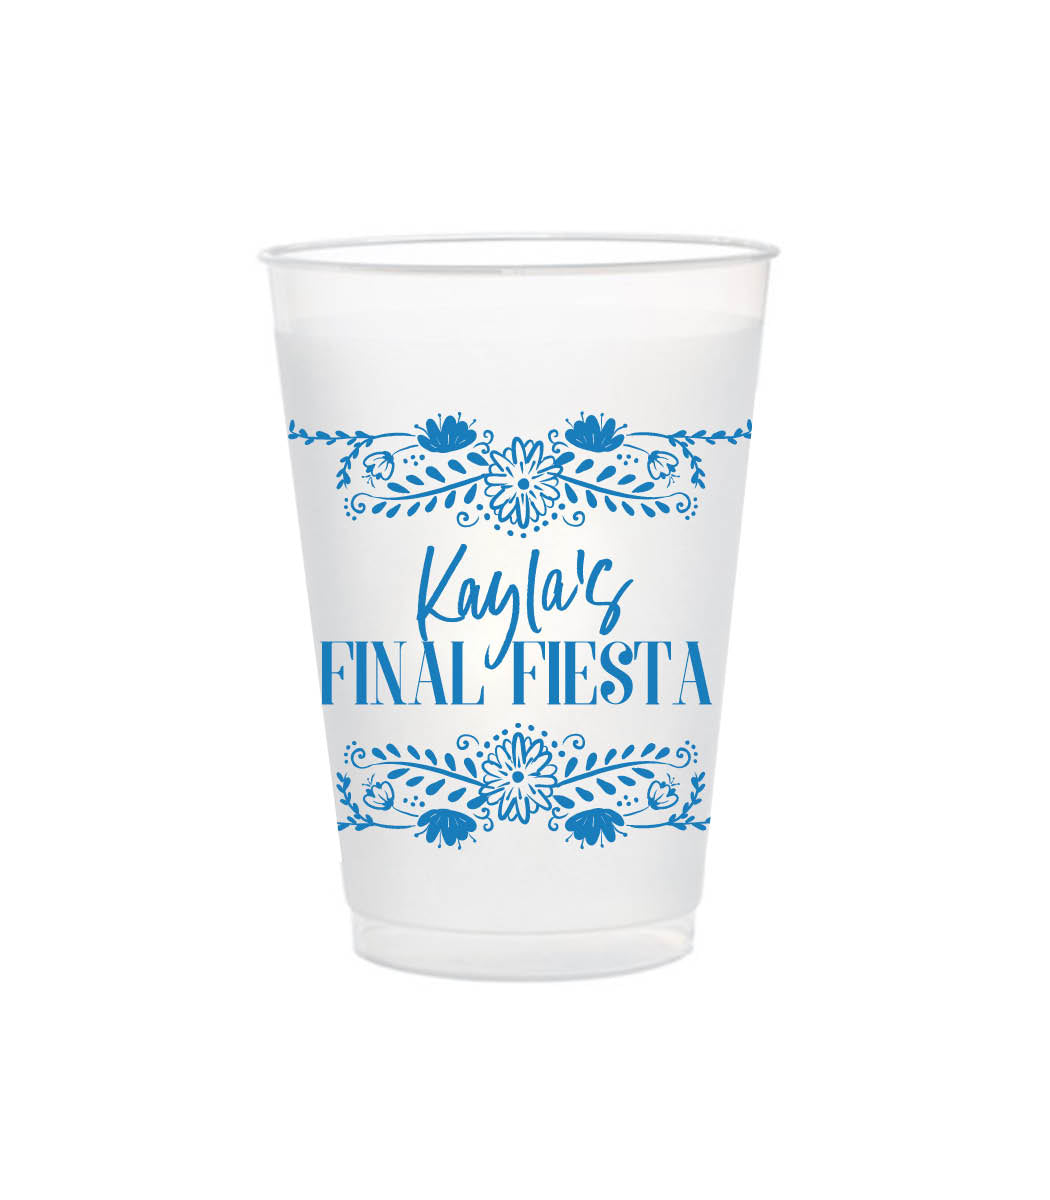 Final Fiesta | Shatterproof Cups